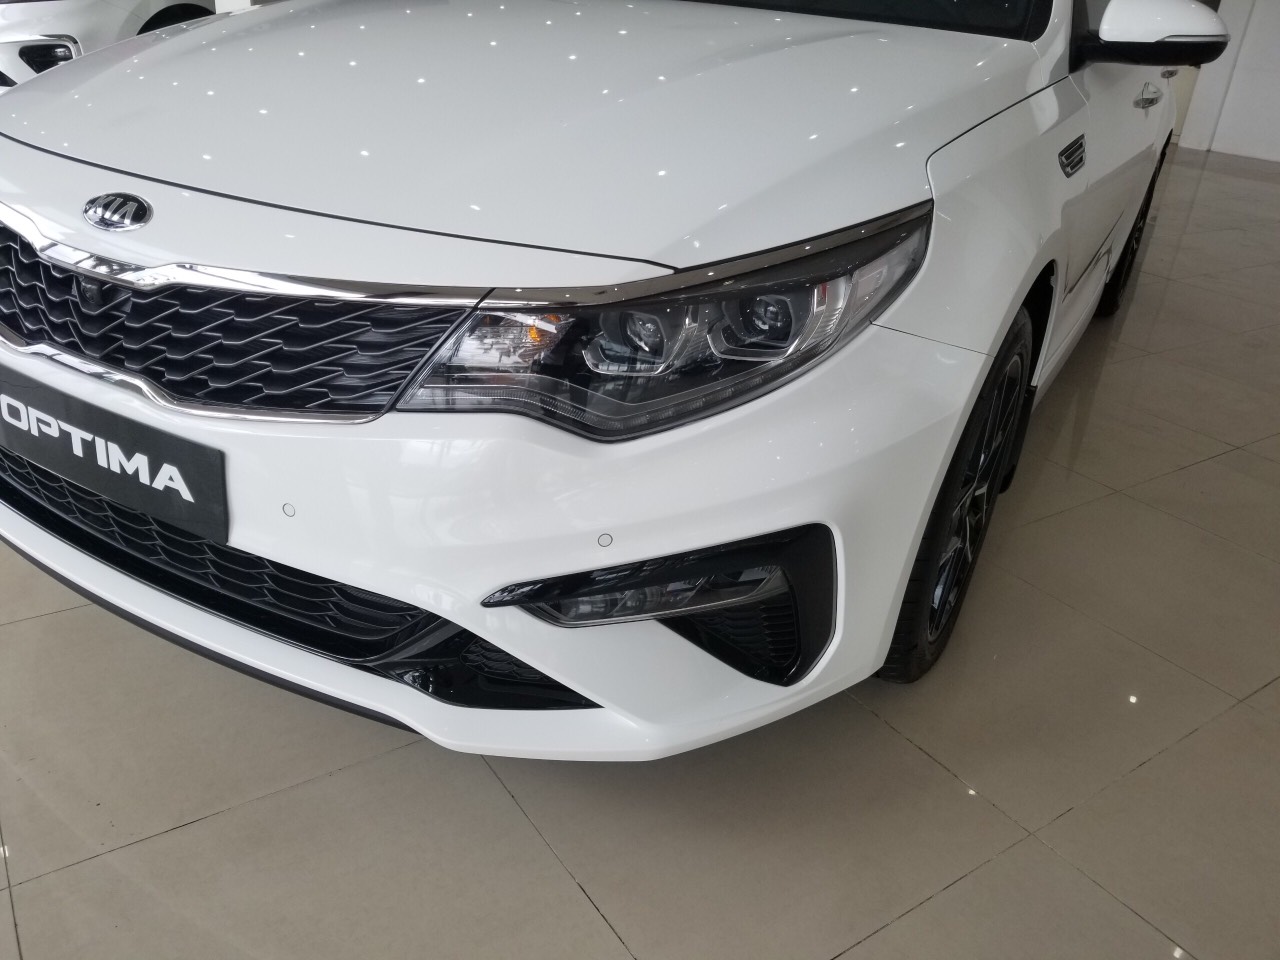 Kia Optima 2.4 GT-Line 2019 - KIA Biên Hòa - Đồng Nai bán xe Optima 2.4 GT Line 2019 bản full, hỗ trợ trả góp tất cả các ngân hàng